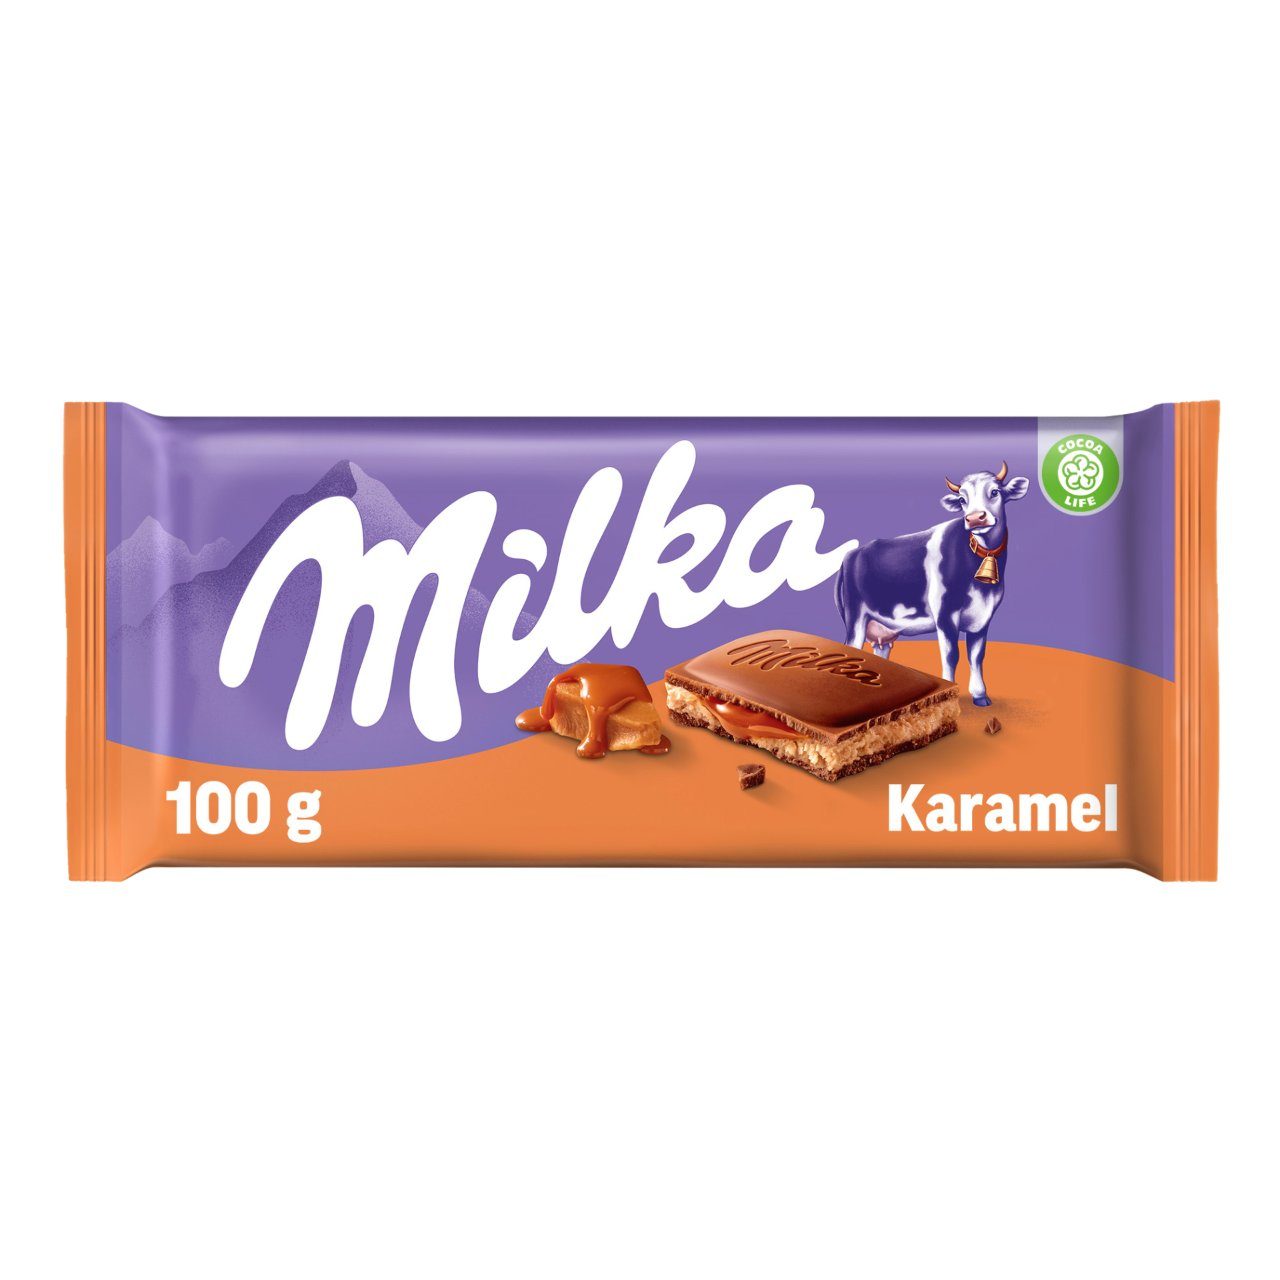 Chocolade Reep Karamel